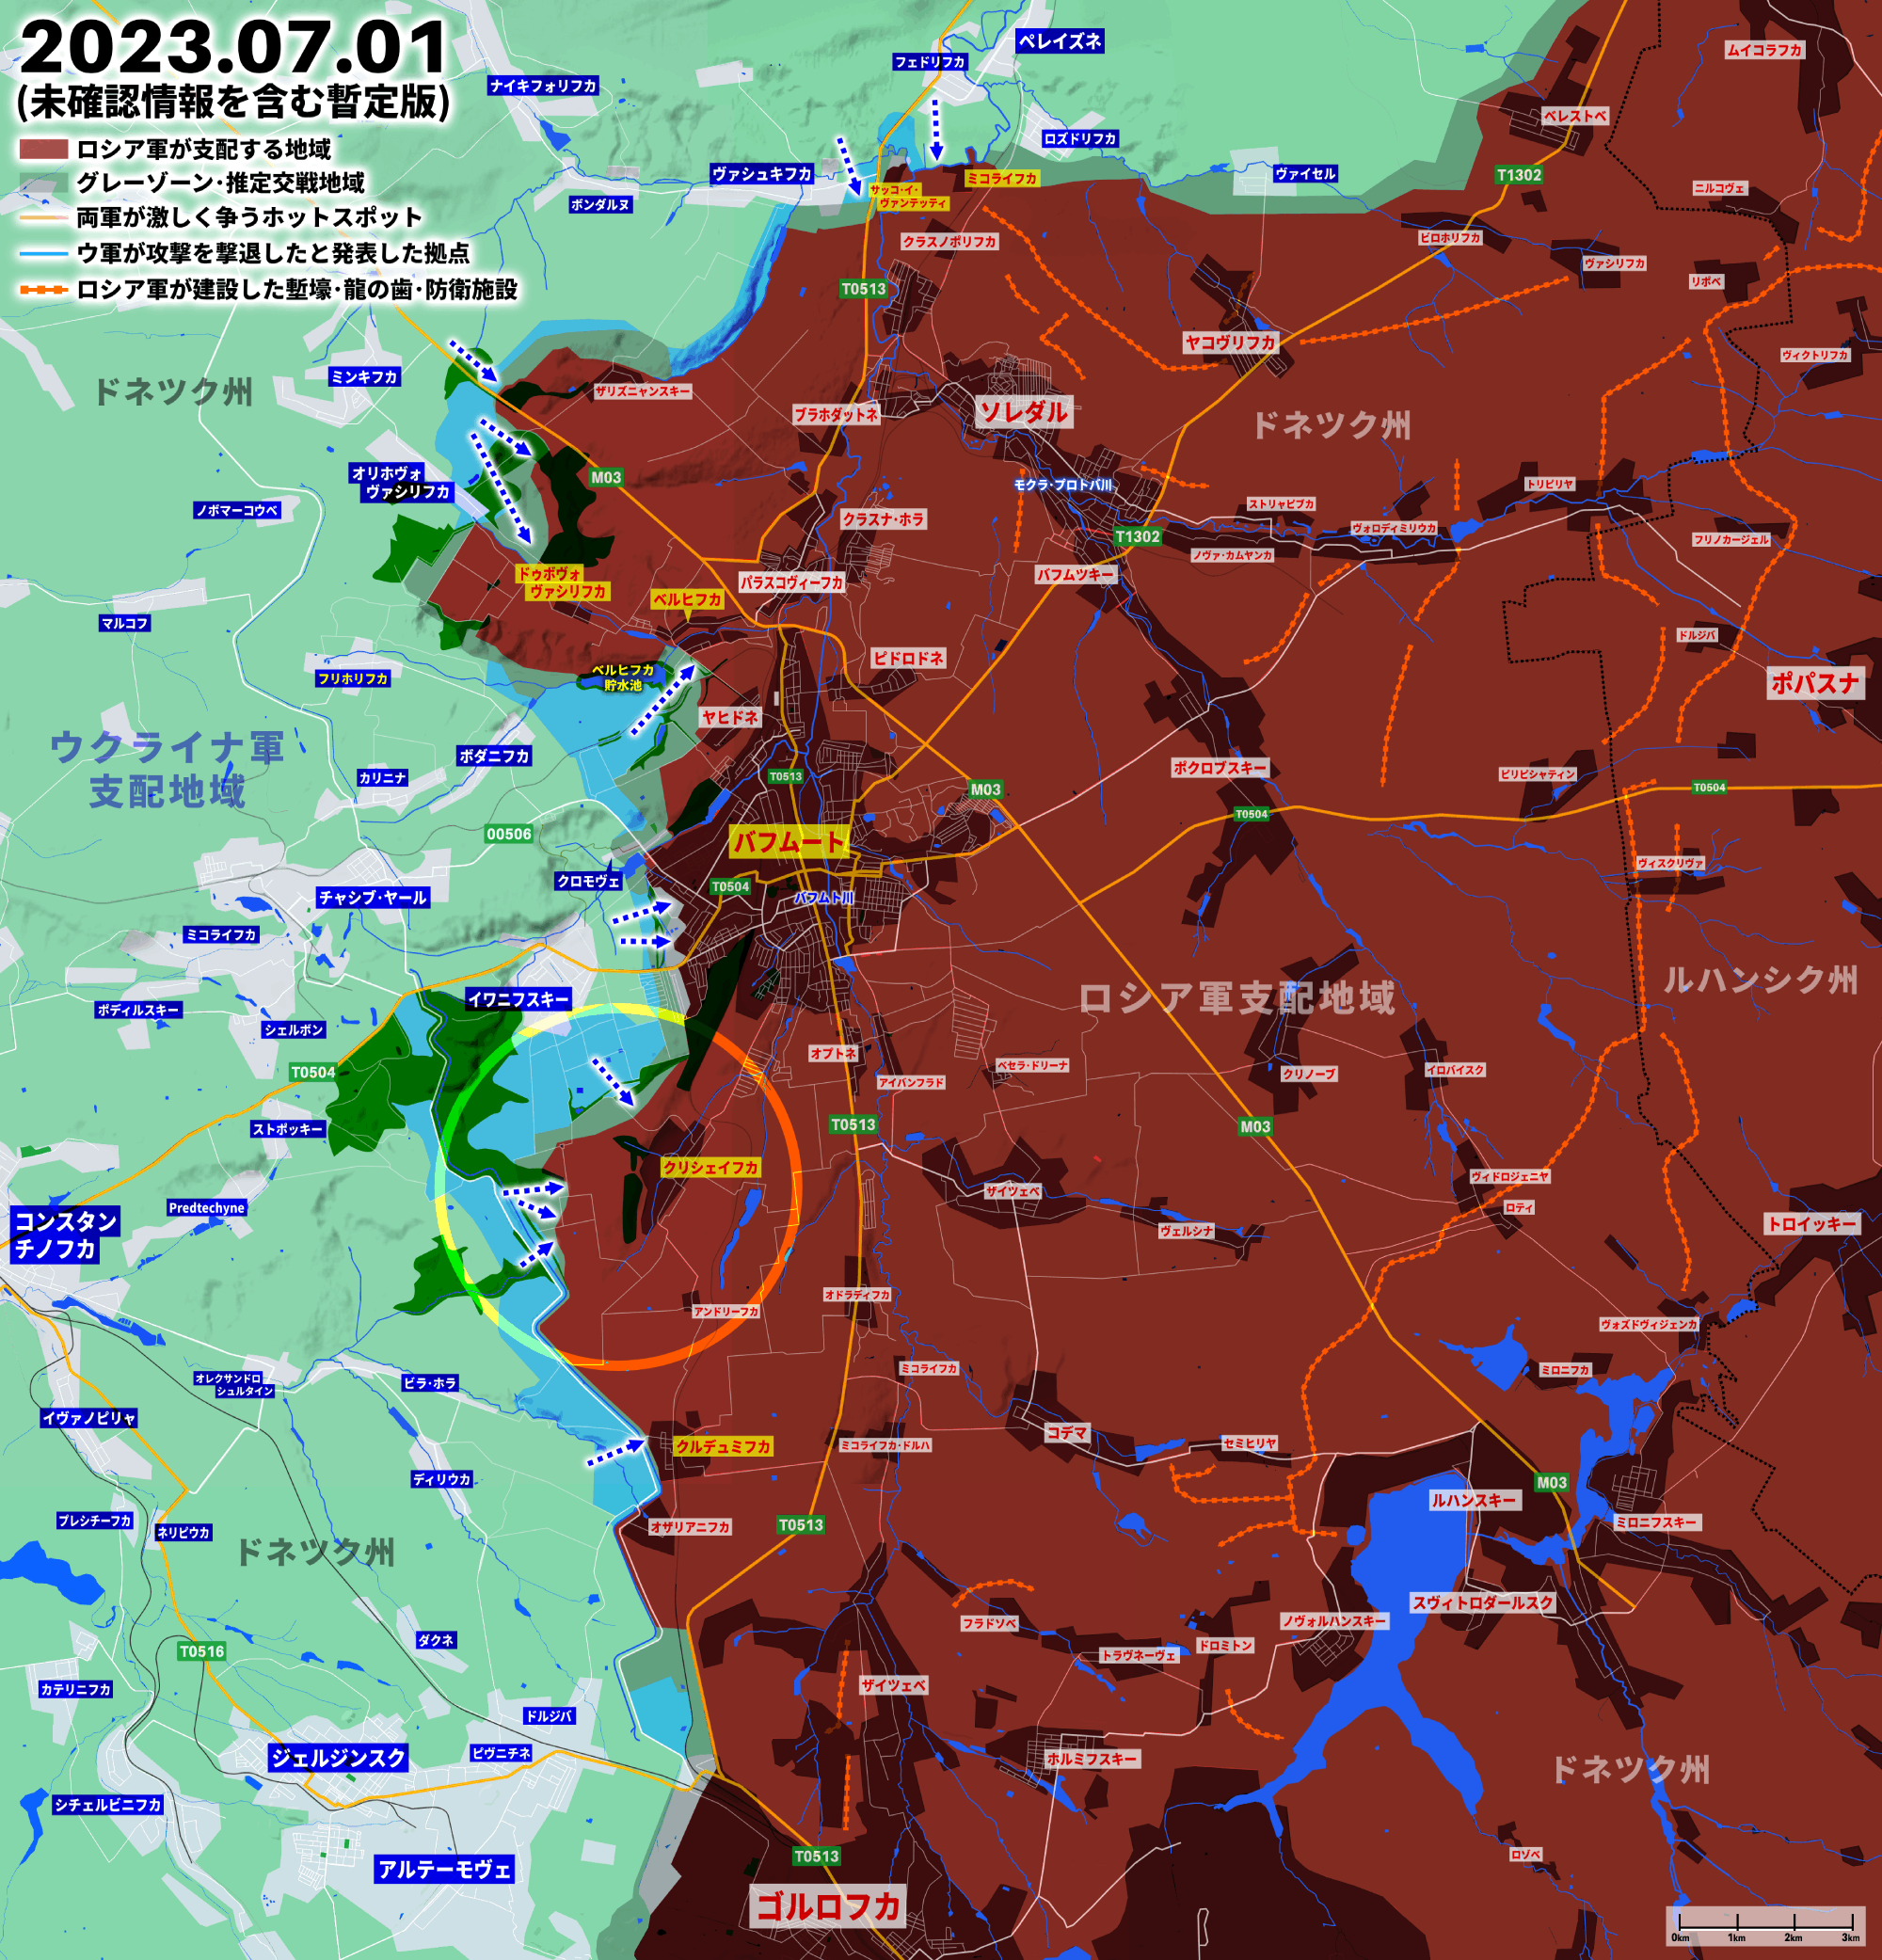 侵攻492日目、バフムート、アウディーイウカ、ザポリージャでウクライナ軍が前進